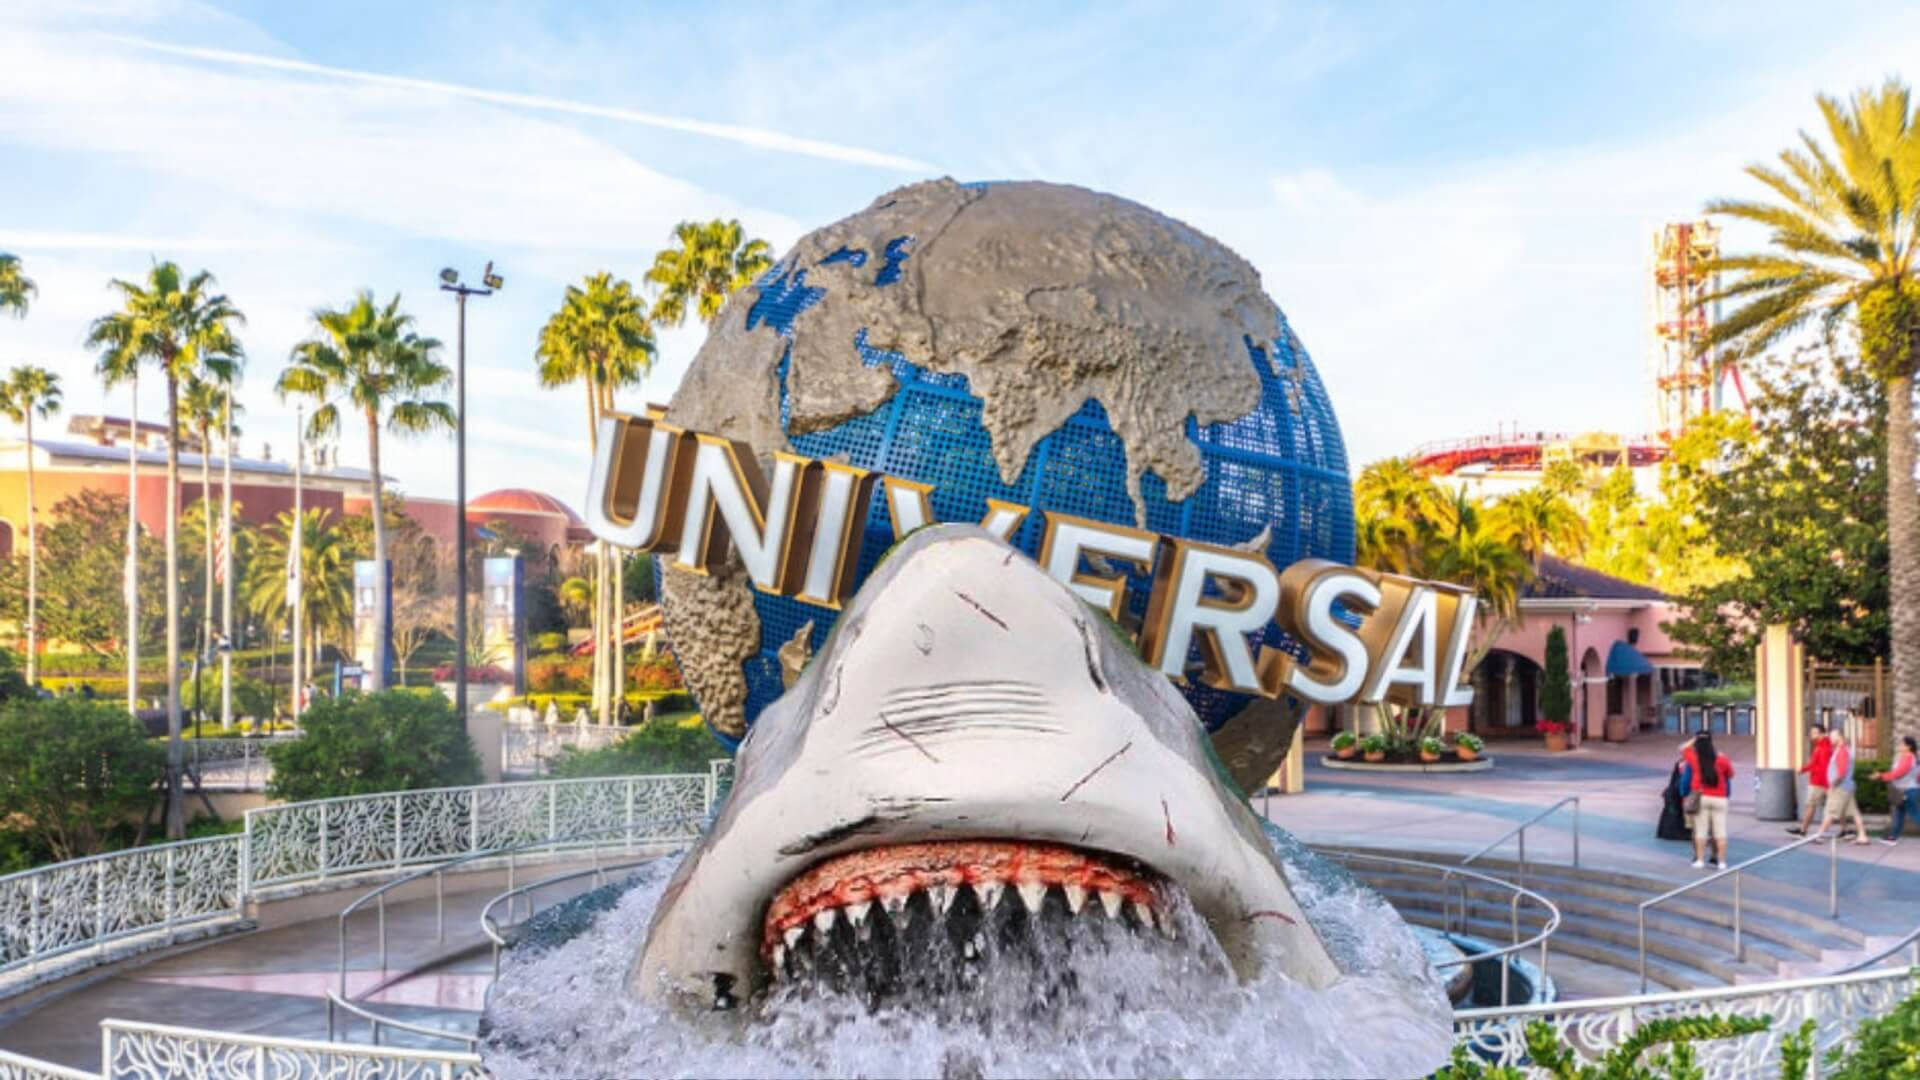 Ride Jaws Again at Universal Studios Wallpaper